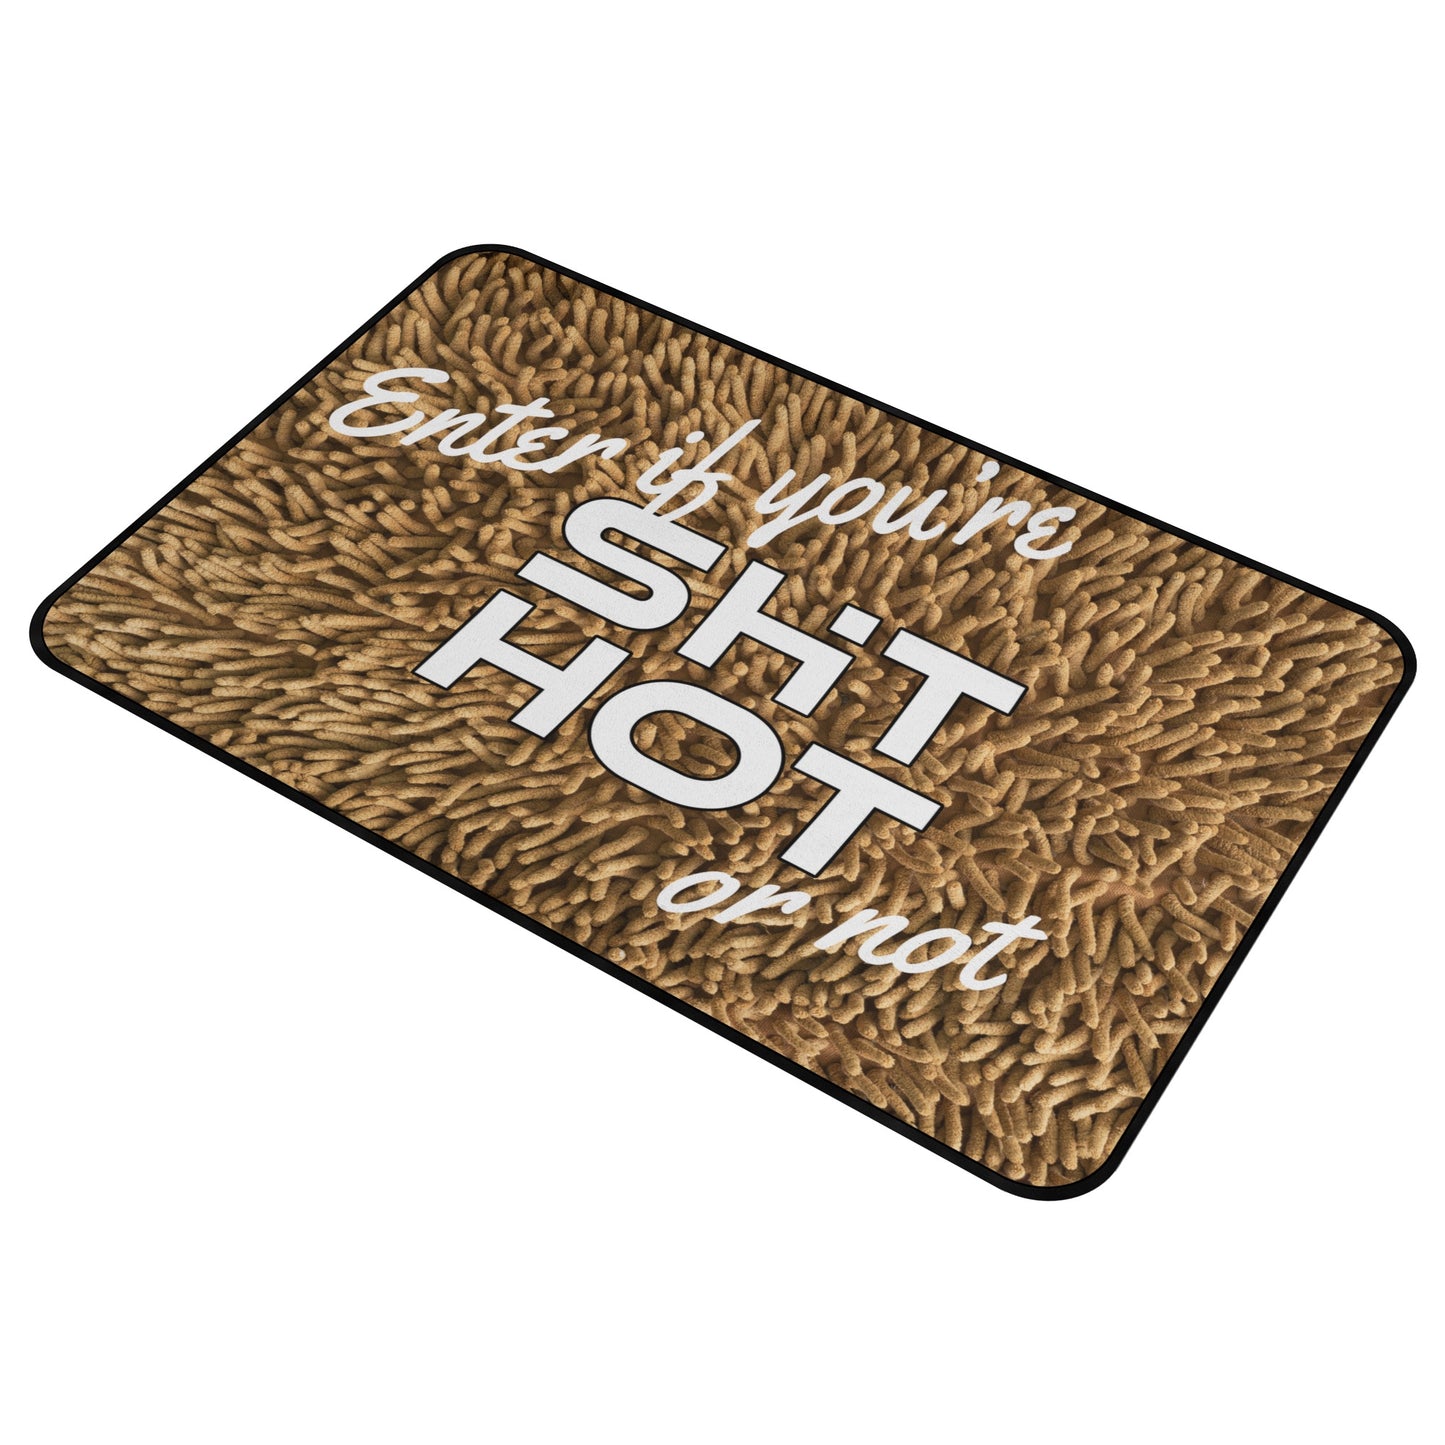 ShitHot Doormat Shagpile - ShitHot Or Not